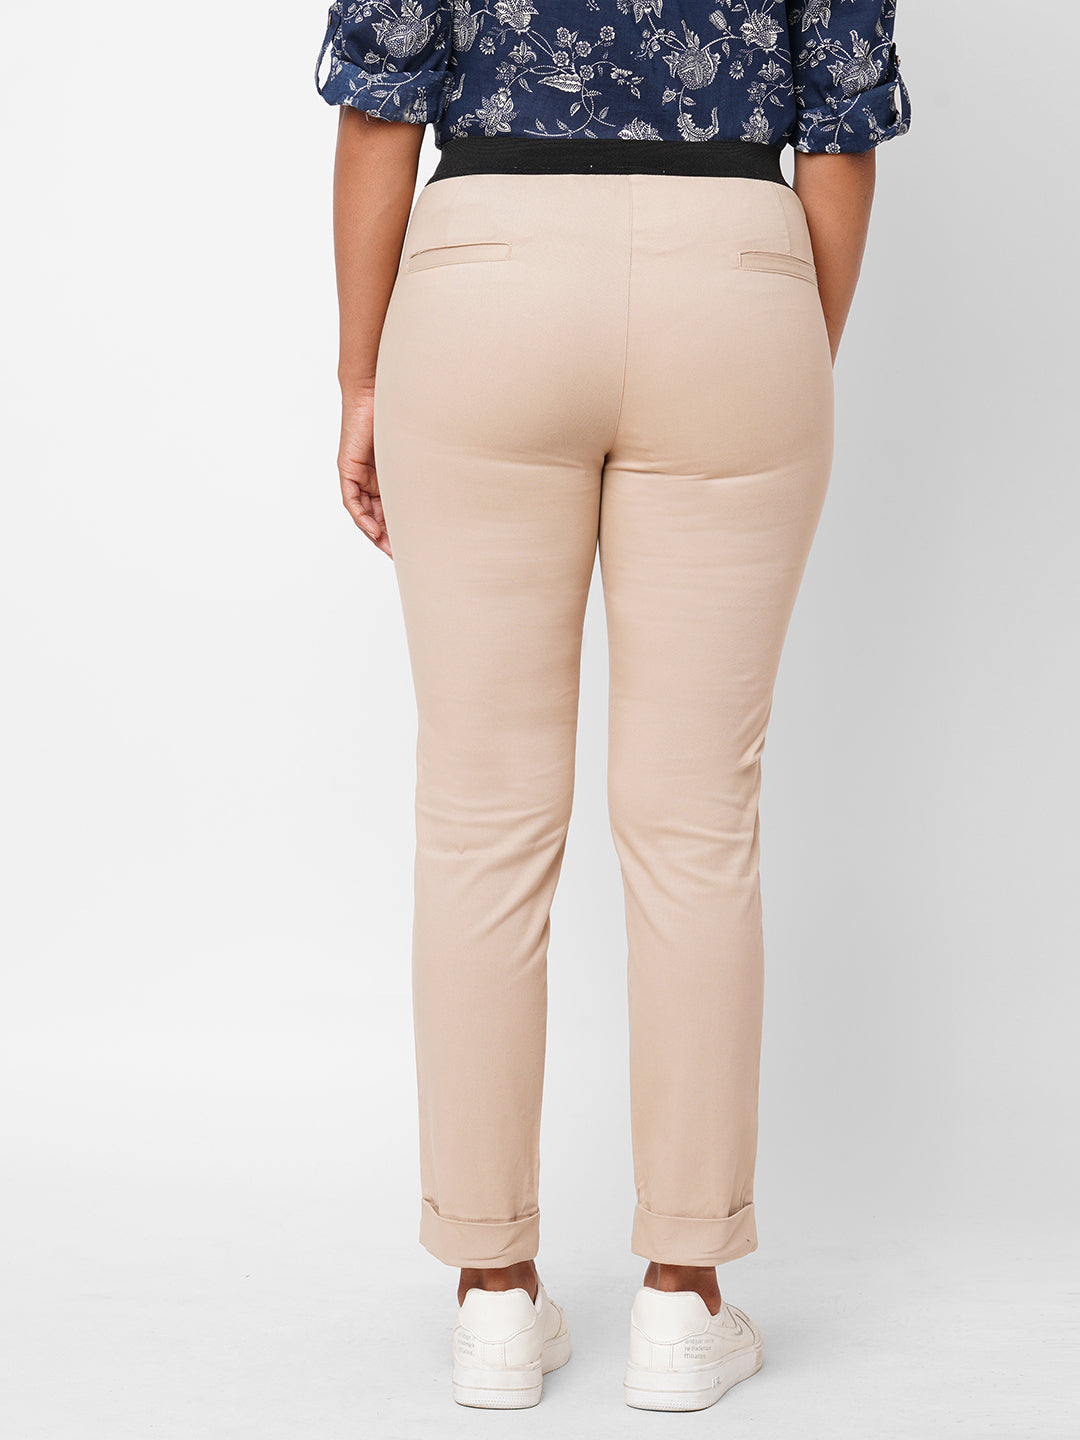 Buy Khaki Trousers  Pants for Women by GAS Online  Ajiocom